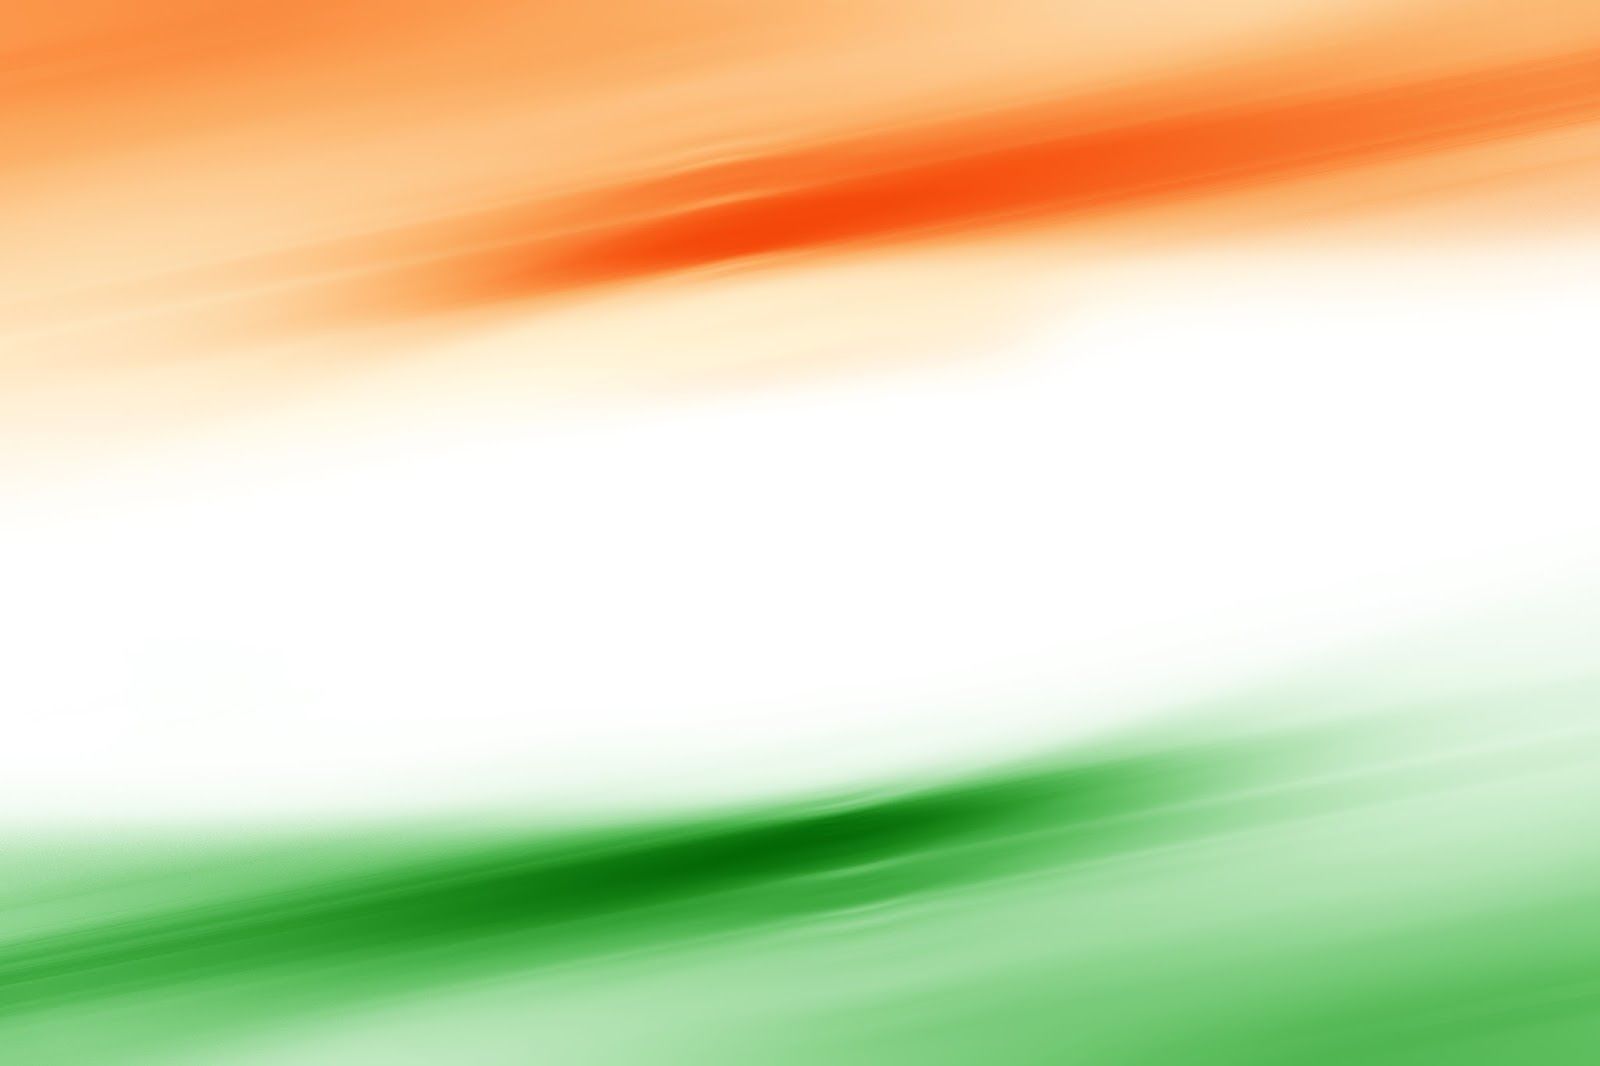 Ngày Quốc khánh Ấn Độ là dịp để tôn vinh sự độc lập và sức mạnh của đất nước này. Hình nền lễ kỷ niệm trên trang web của chúng tôi sẽ giúp bạn tăng thêm niềm vui và đồng hành cùng người dân Ấn Độ trong ngày quan trọng này. Hãy tải về hình nền đặc biệt này để khiến máy tính của bạn trở thành một phần của nghi lễ của người dân Ấn Độ trong ngày lễ này.